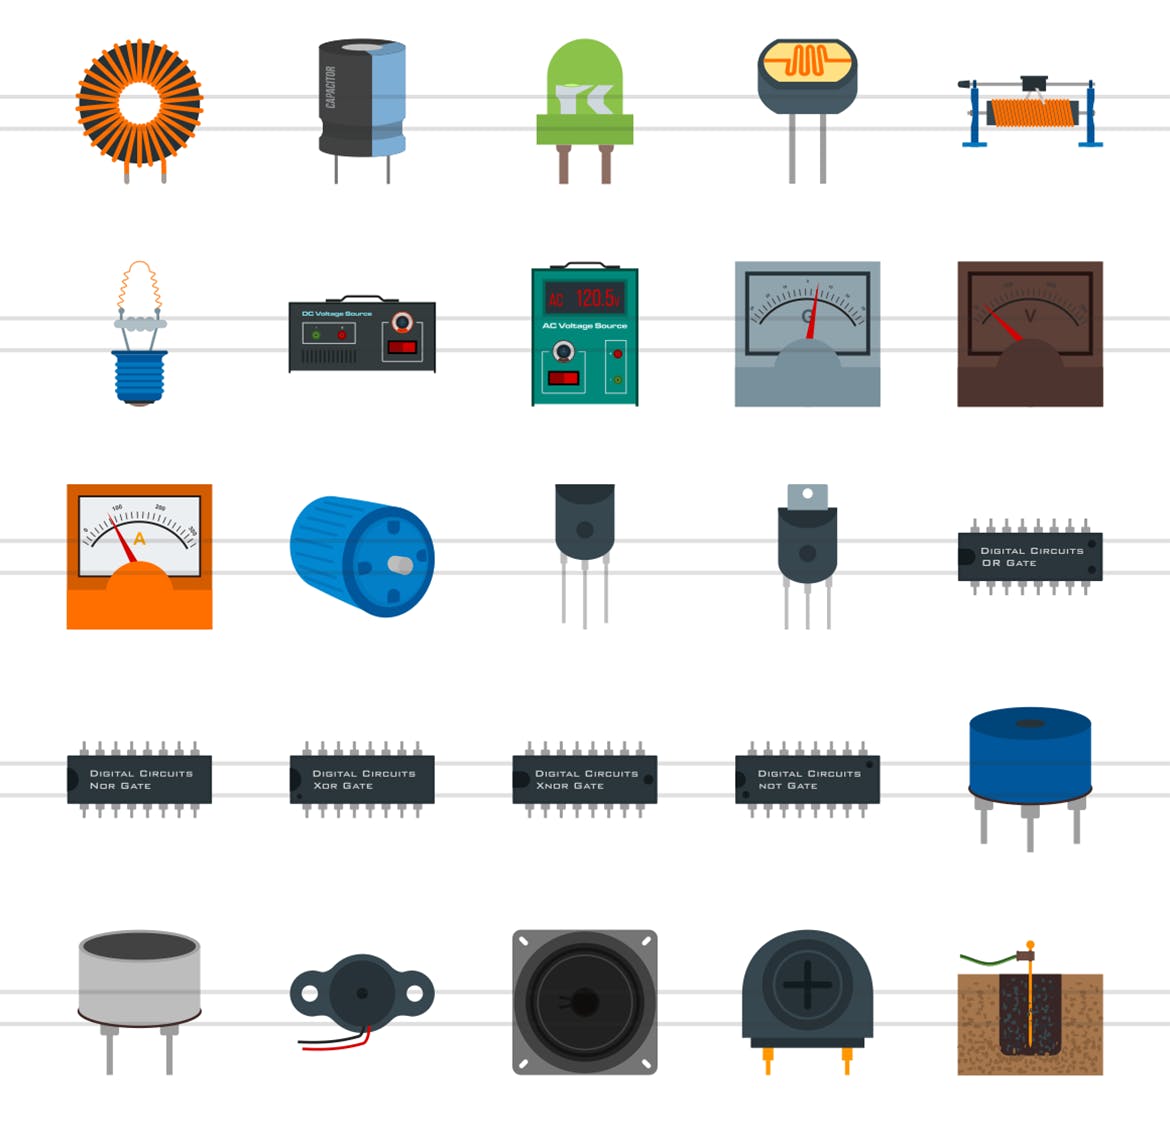 50枚电路线路板主题扁平化彩色矢量16设计素材网精选图标 50 Electric Circuits Flat Multicolor Icons插图(2)